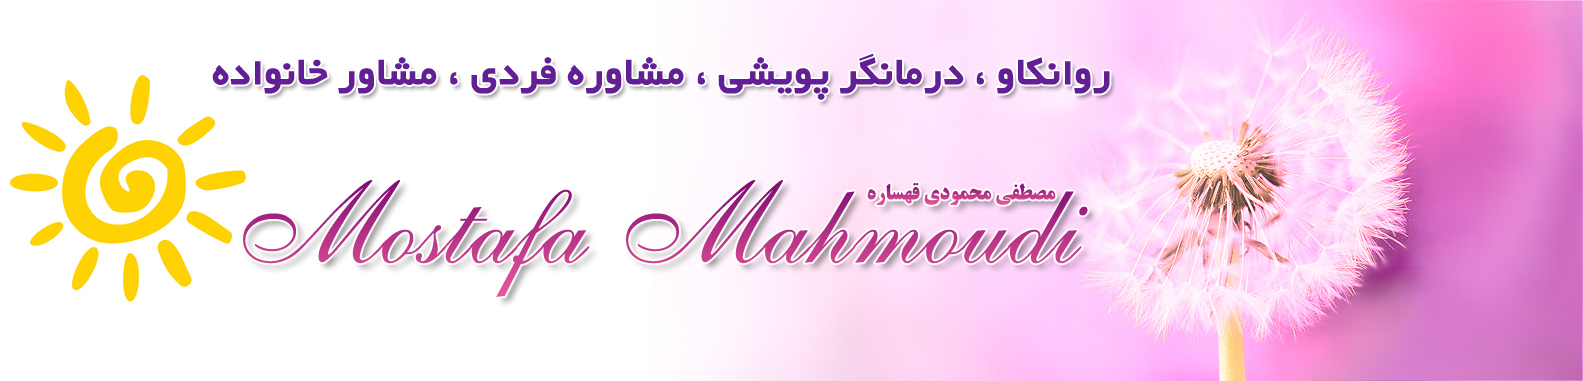 مصطفی محمودی قهساره 